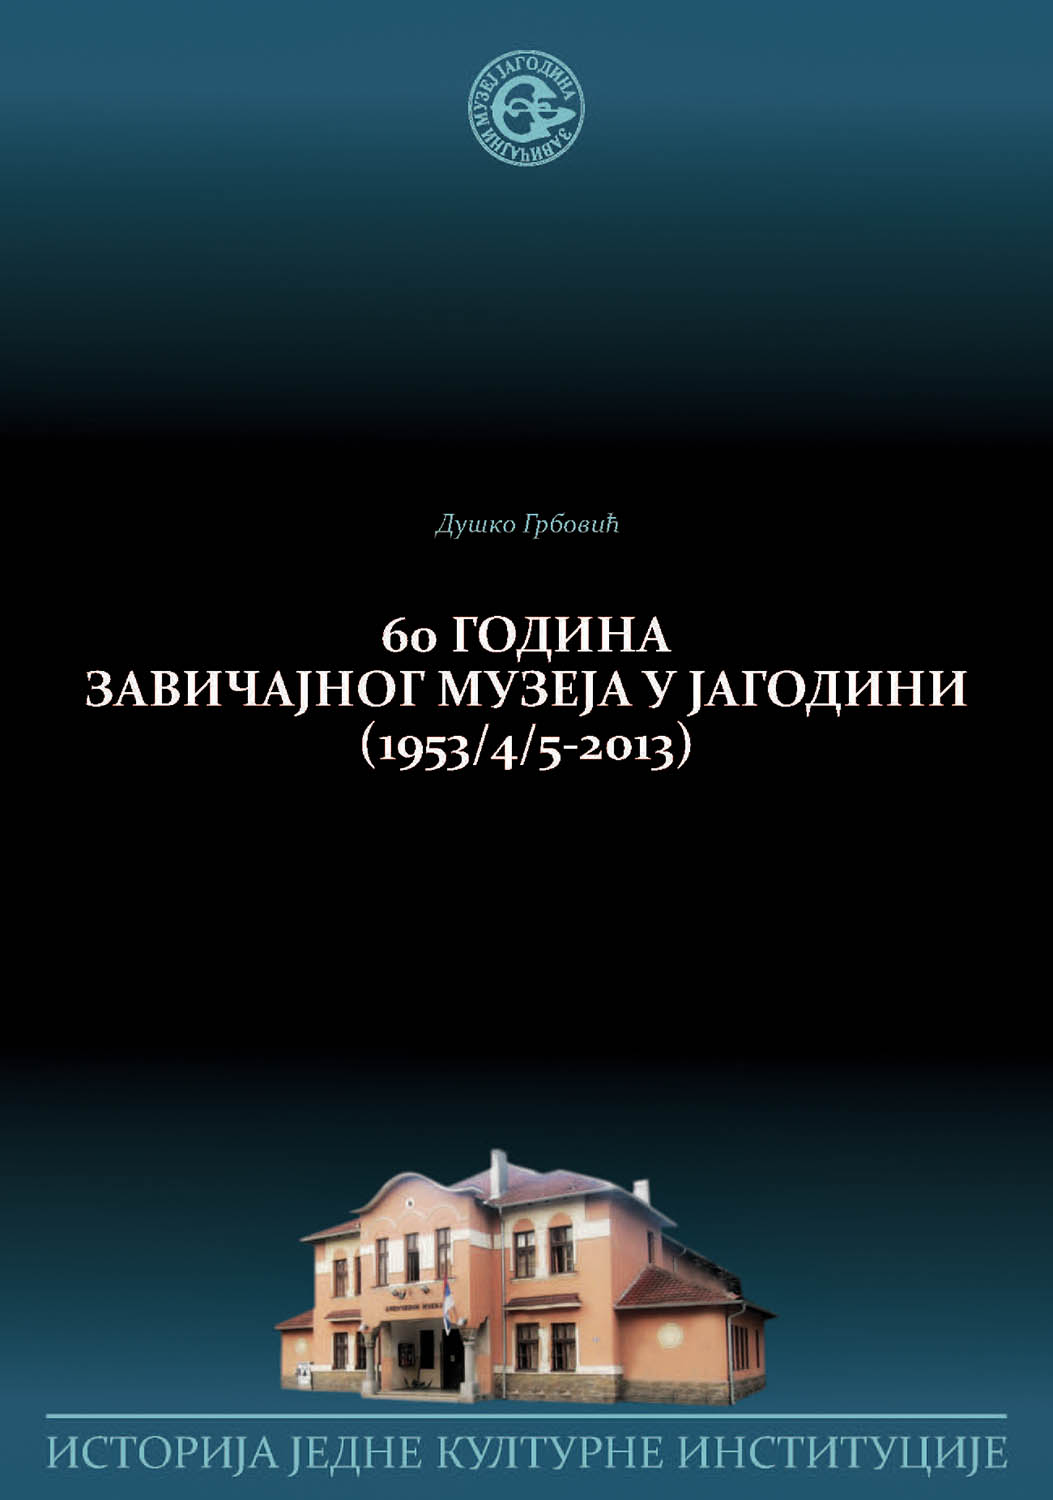 60 година Завичајног музеја у Јагодини (1953/4/5-2013): историја једне културне институције